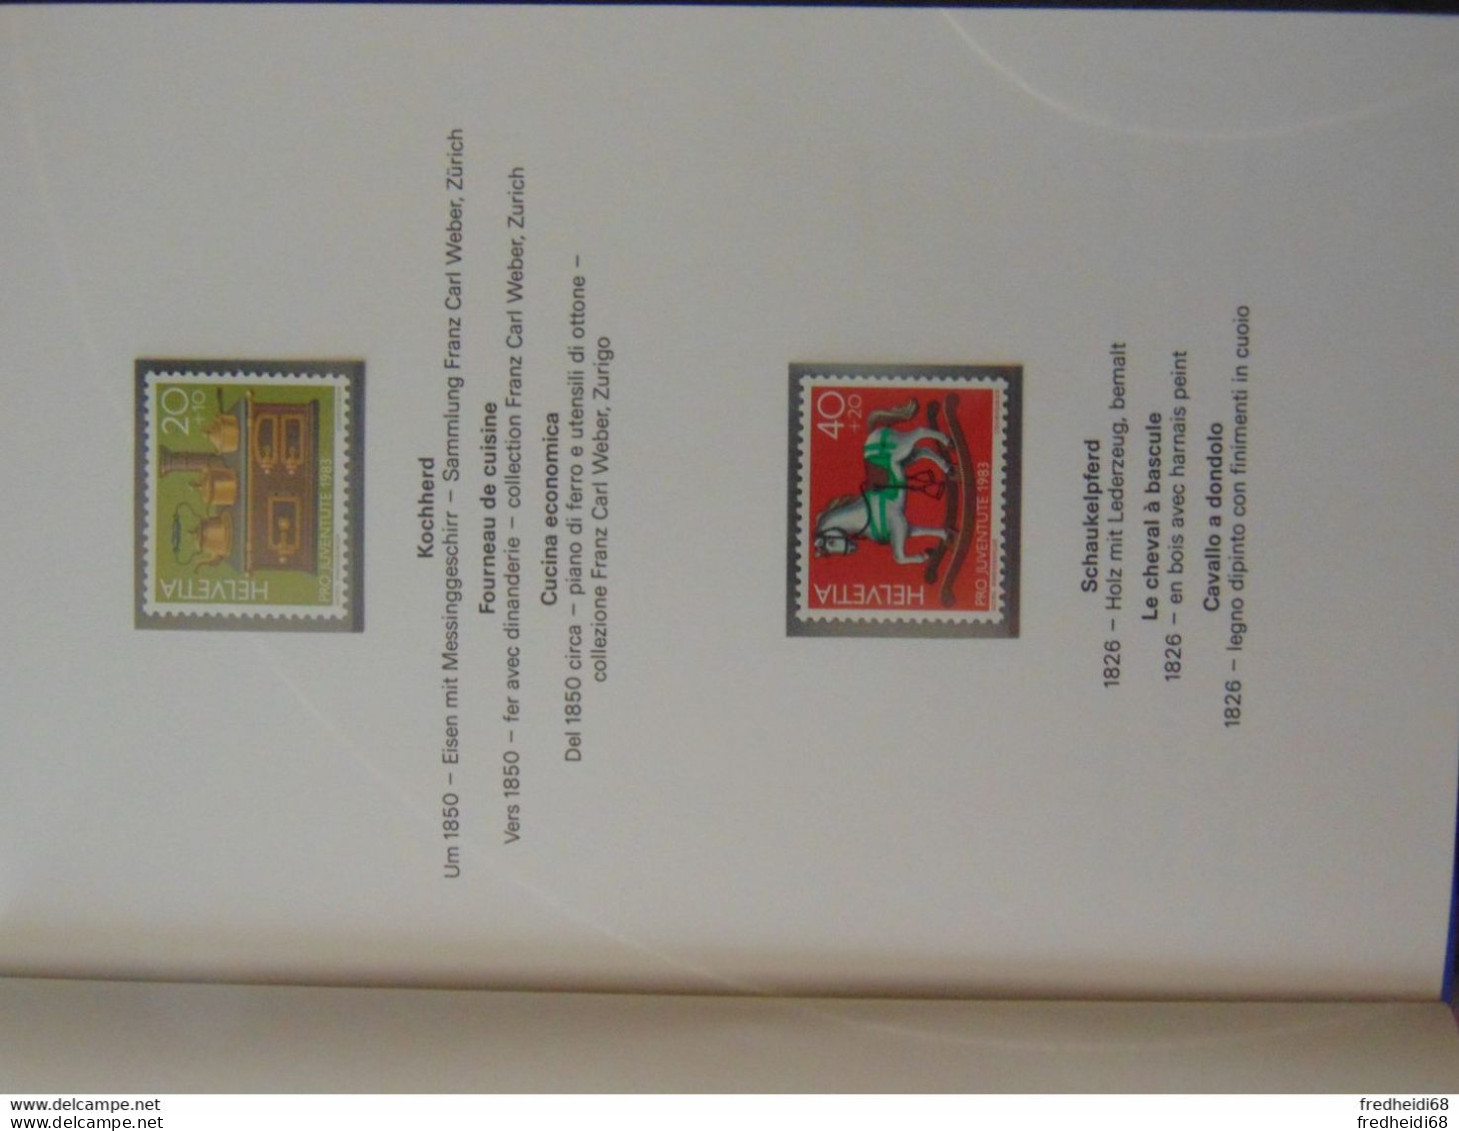 Magnifique Petit Livret Souvenir Offert Par Les PTT Suisses Couvrant Les Années 1983 Et 1986 (14 Photos) - Lettres & Documents